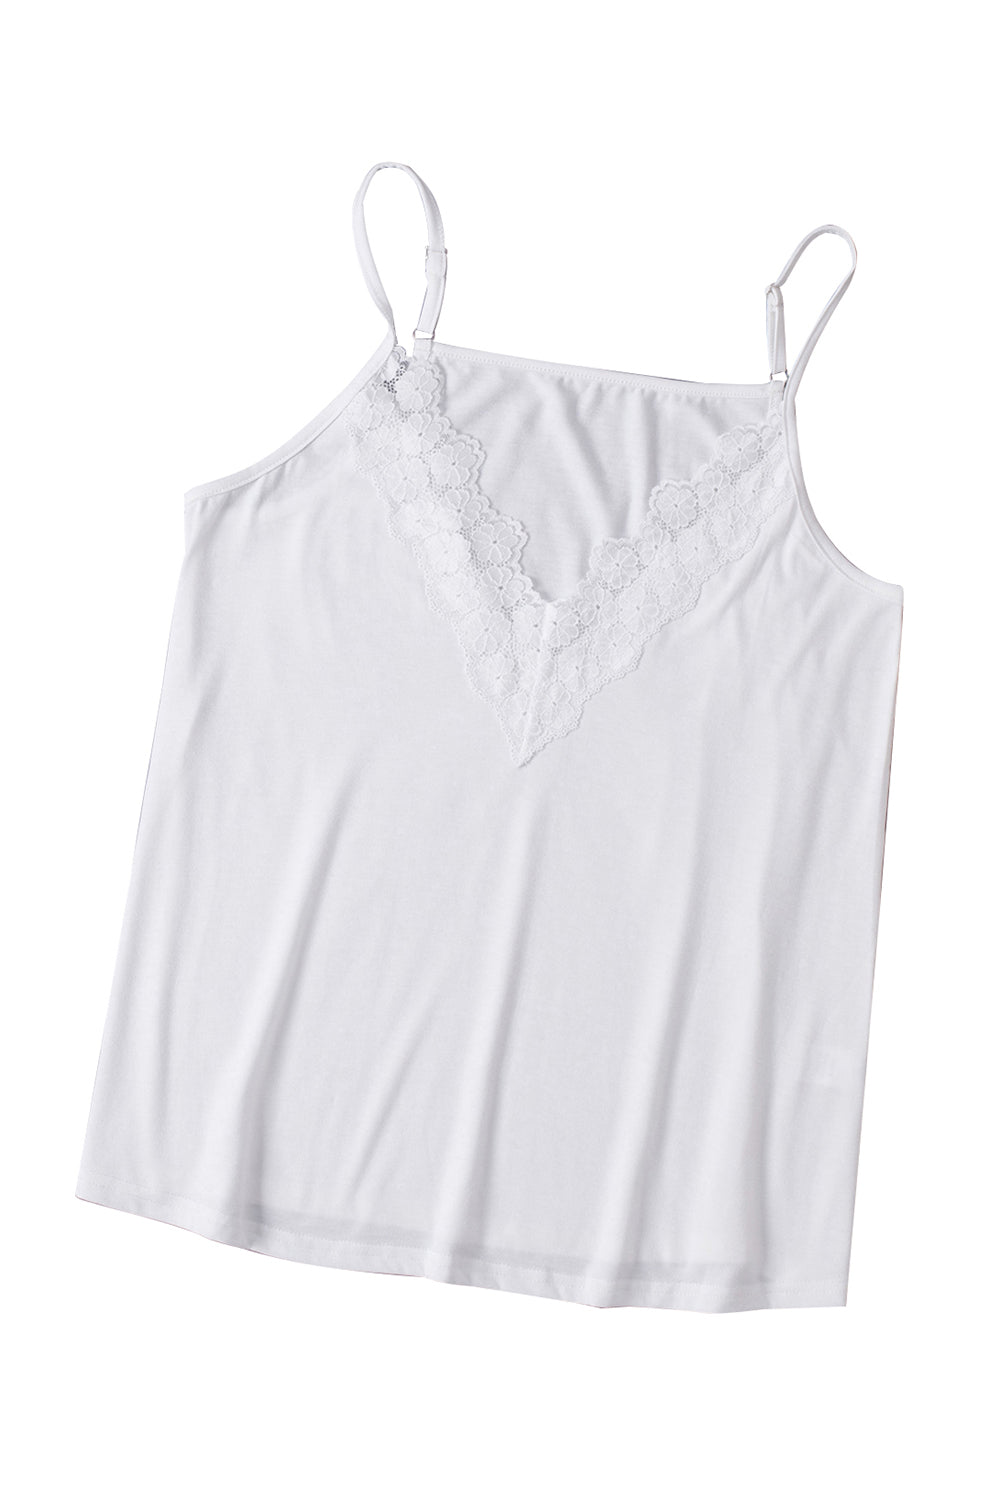 White Lace Splicing V Neck Cami Top Tank Tops JT's Designer Fashion